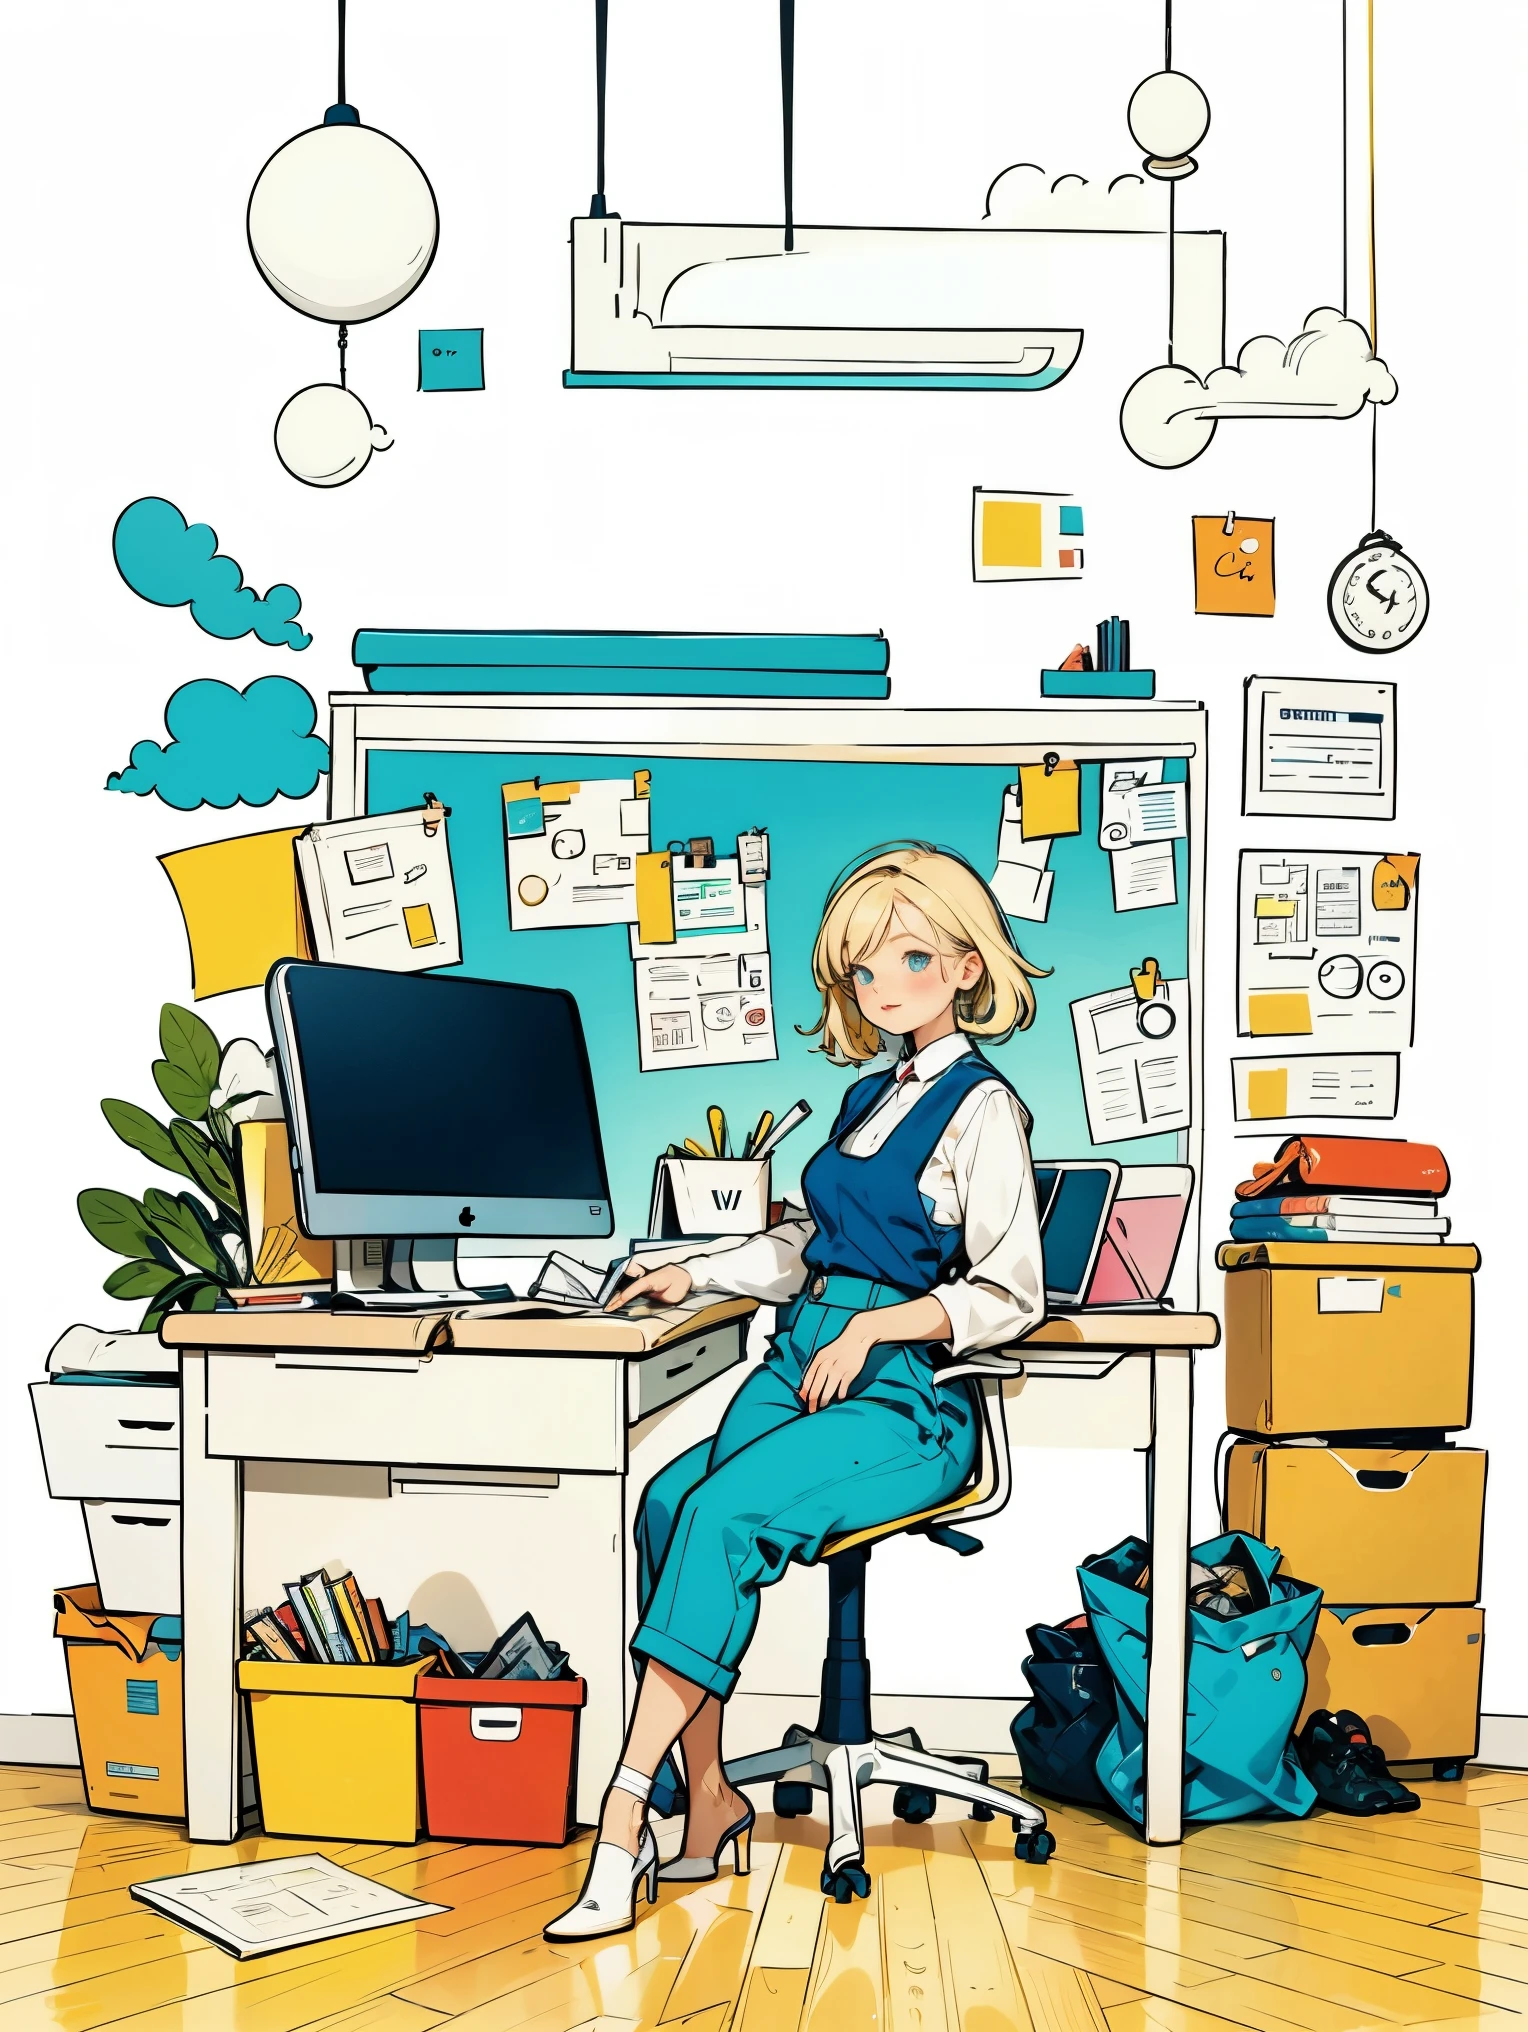 1 garota de camisa branca e colete azul,calça,de pé,trabalhando no escritório,cabelo longo,Sorriso,fundo simples